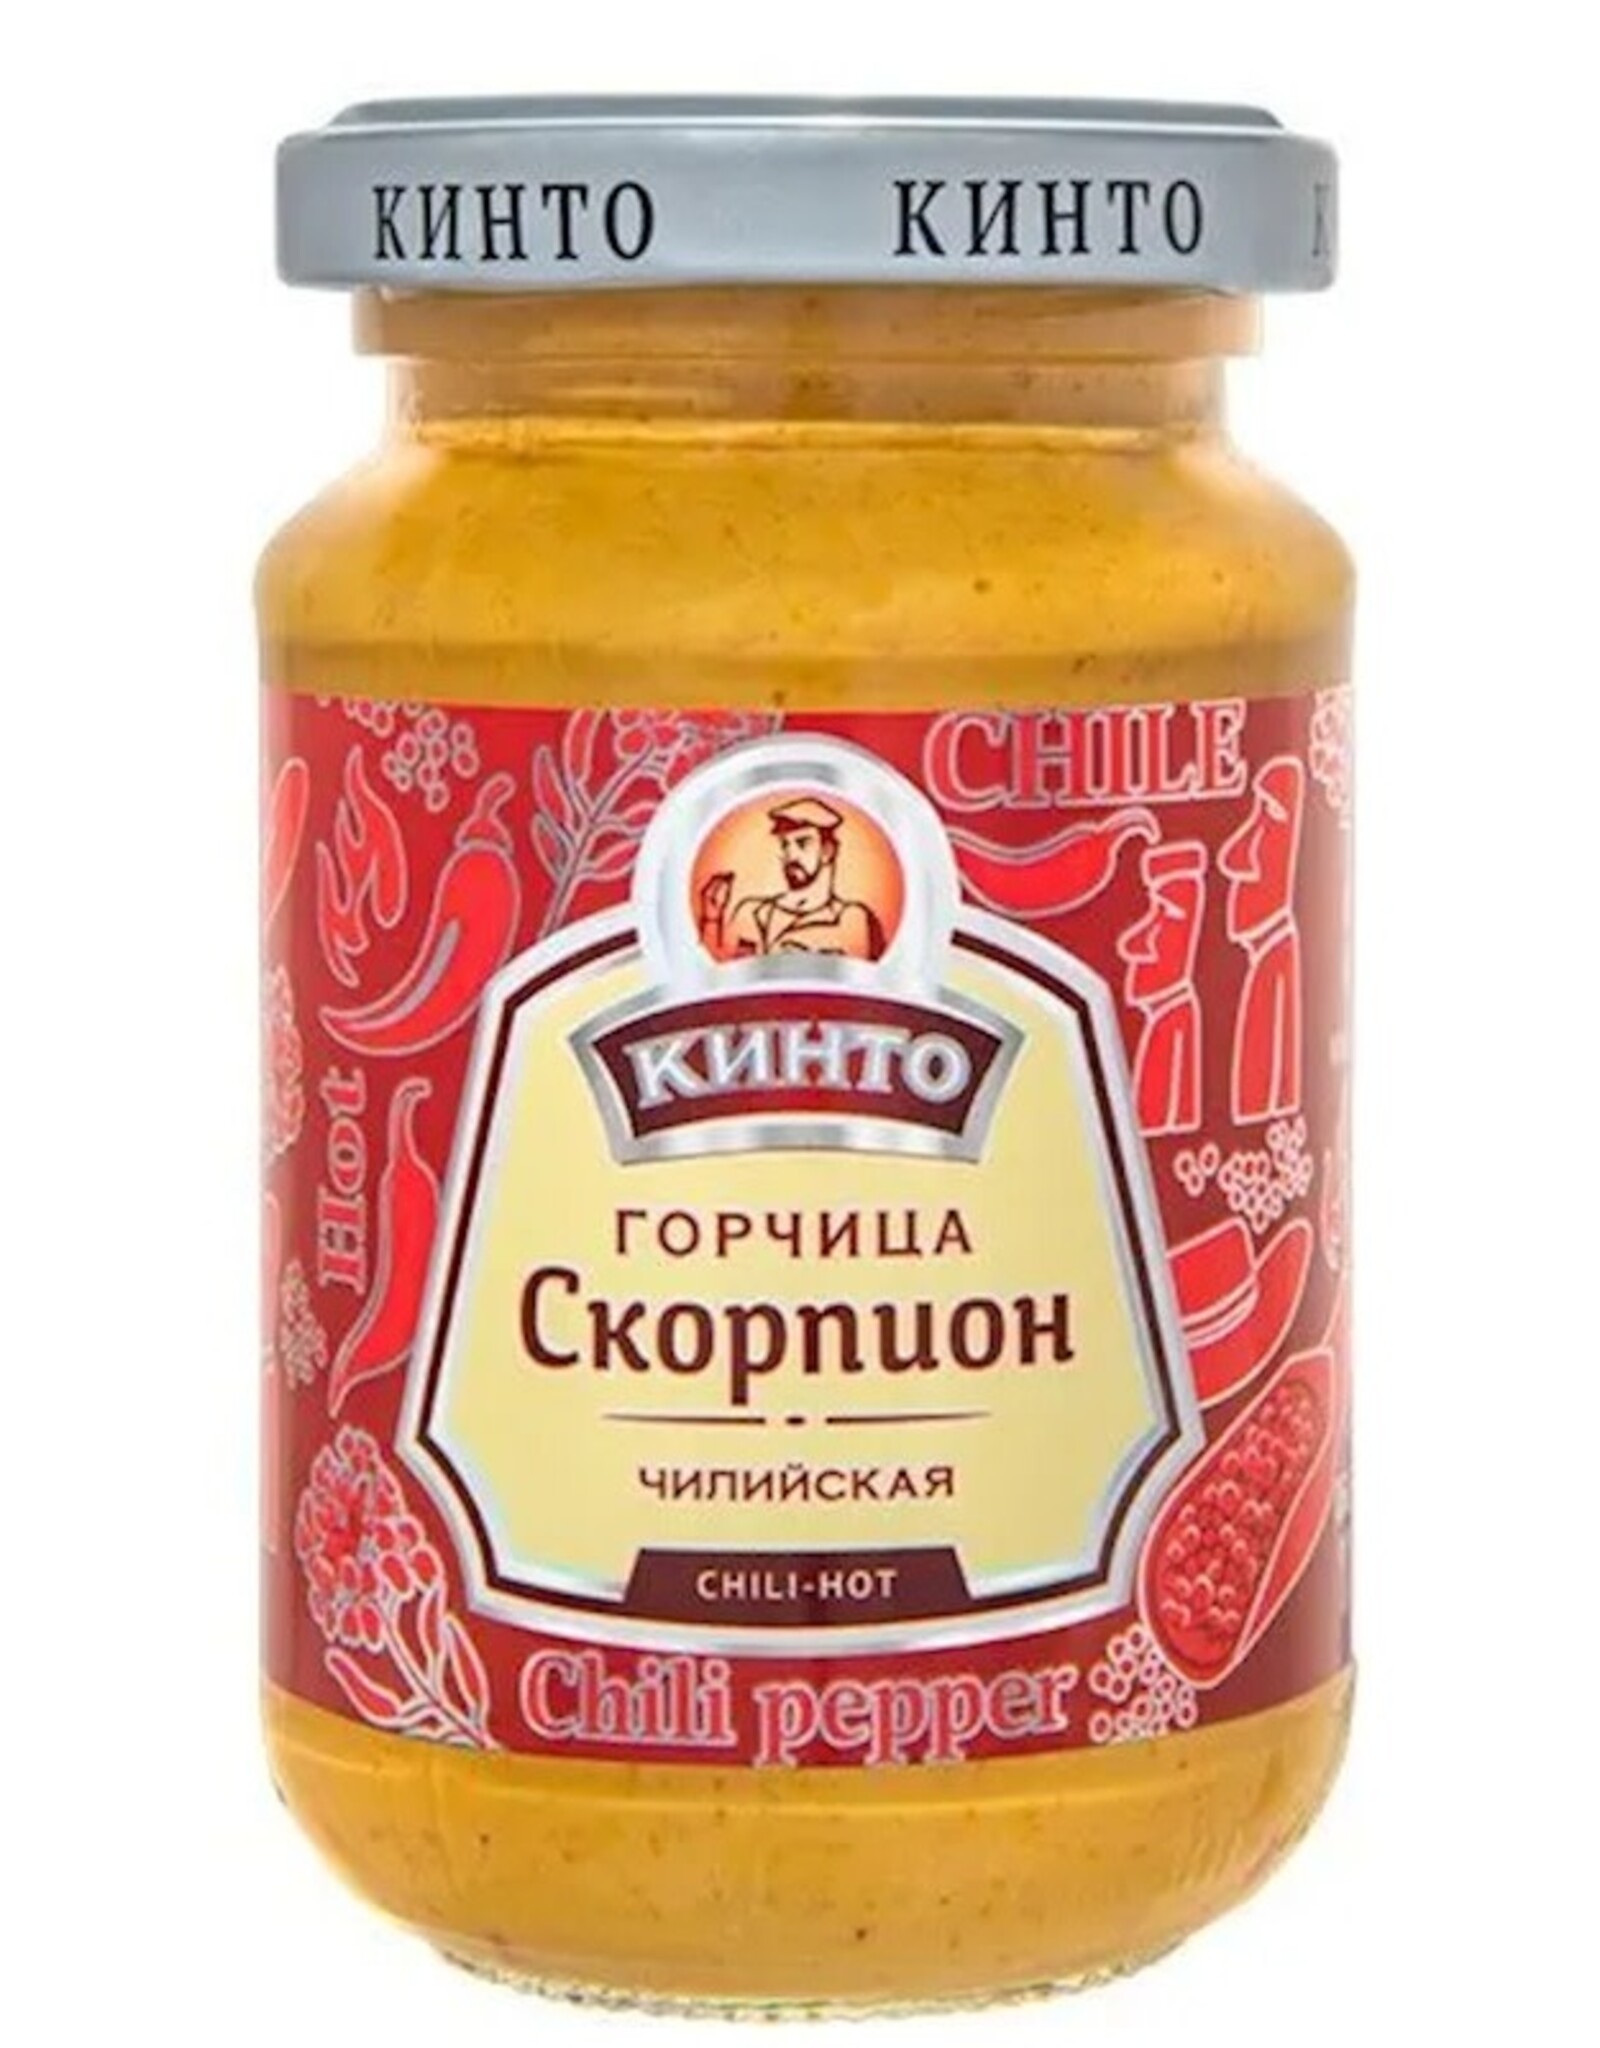 Kinto "Scorpion” Mustard